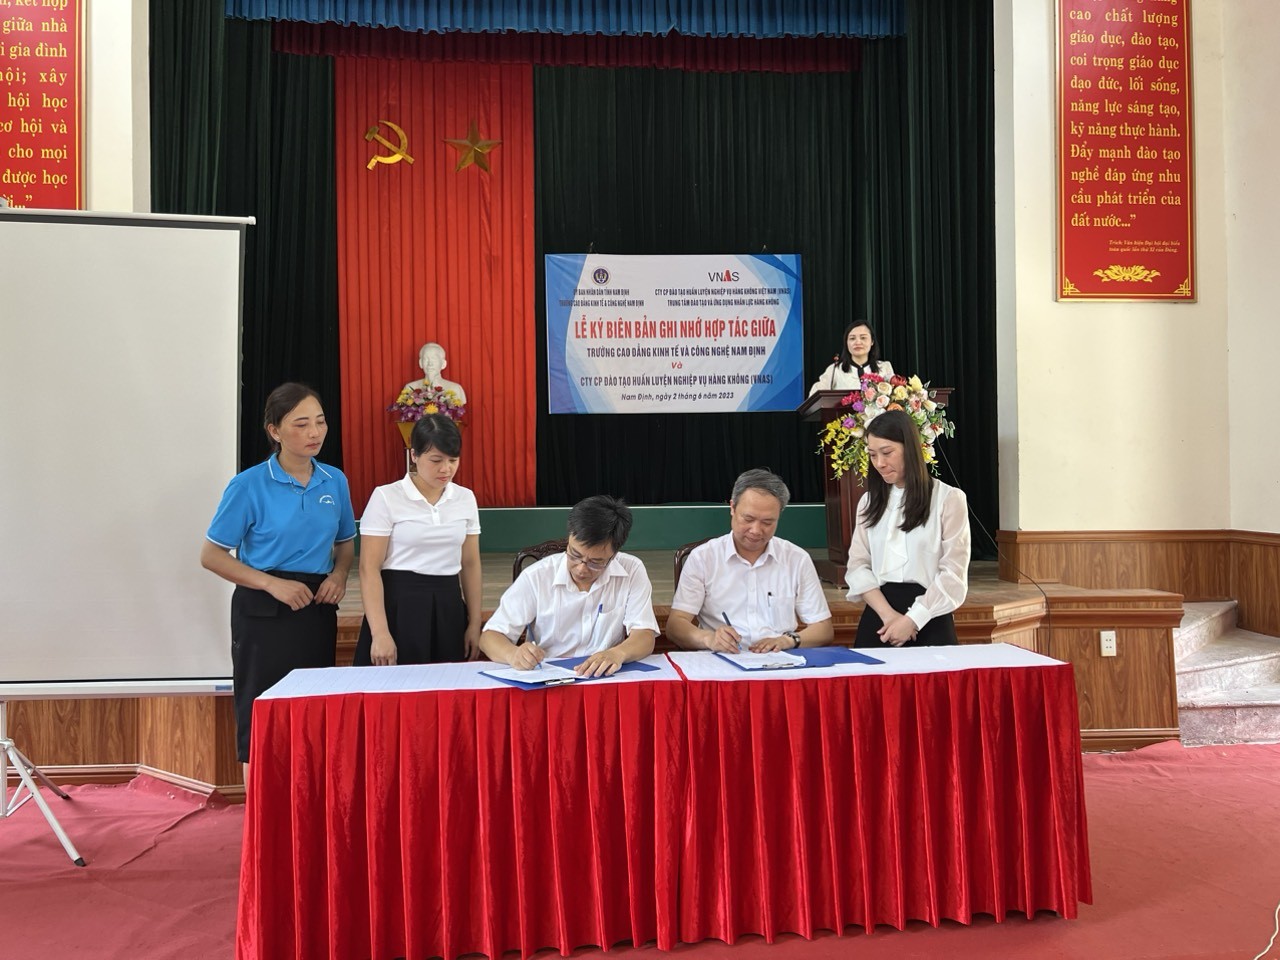 Lễ ký Biên bản ghi nhớ hợp tác giữa ông ty Cổ phần Đào tạo Huấn luyện Nghiệp vụ Hàng không Việt Nam và Trường Cao đẳng Kinh tế và Công nghệ Nam Định